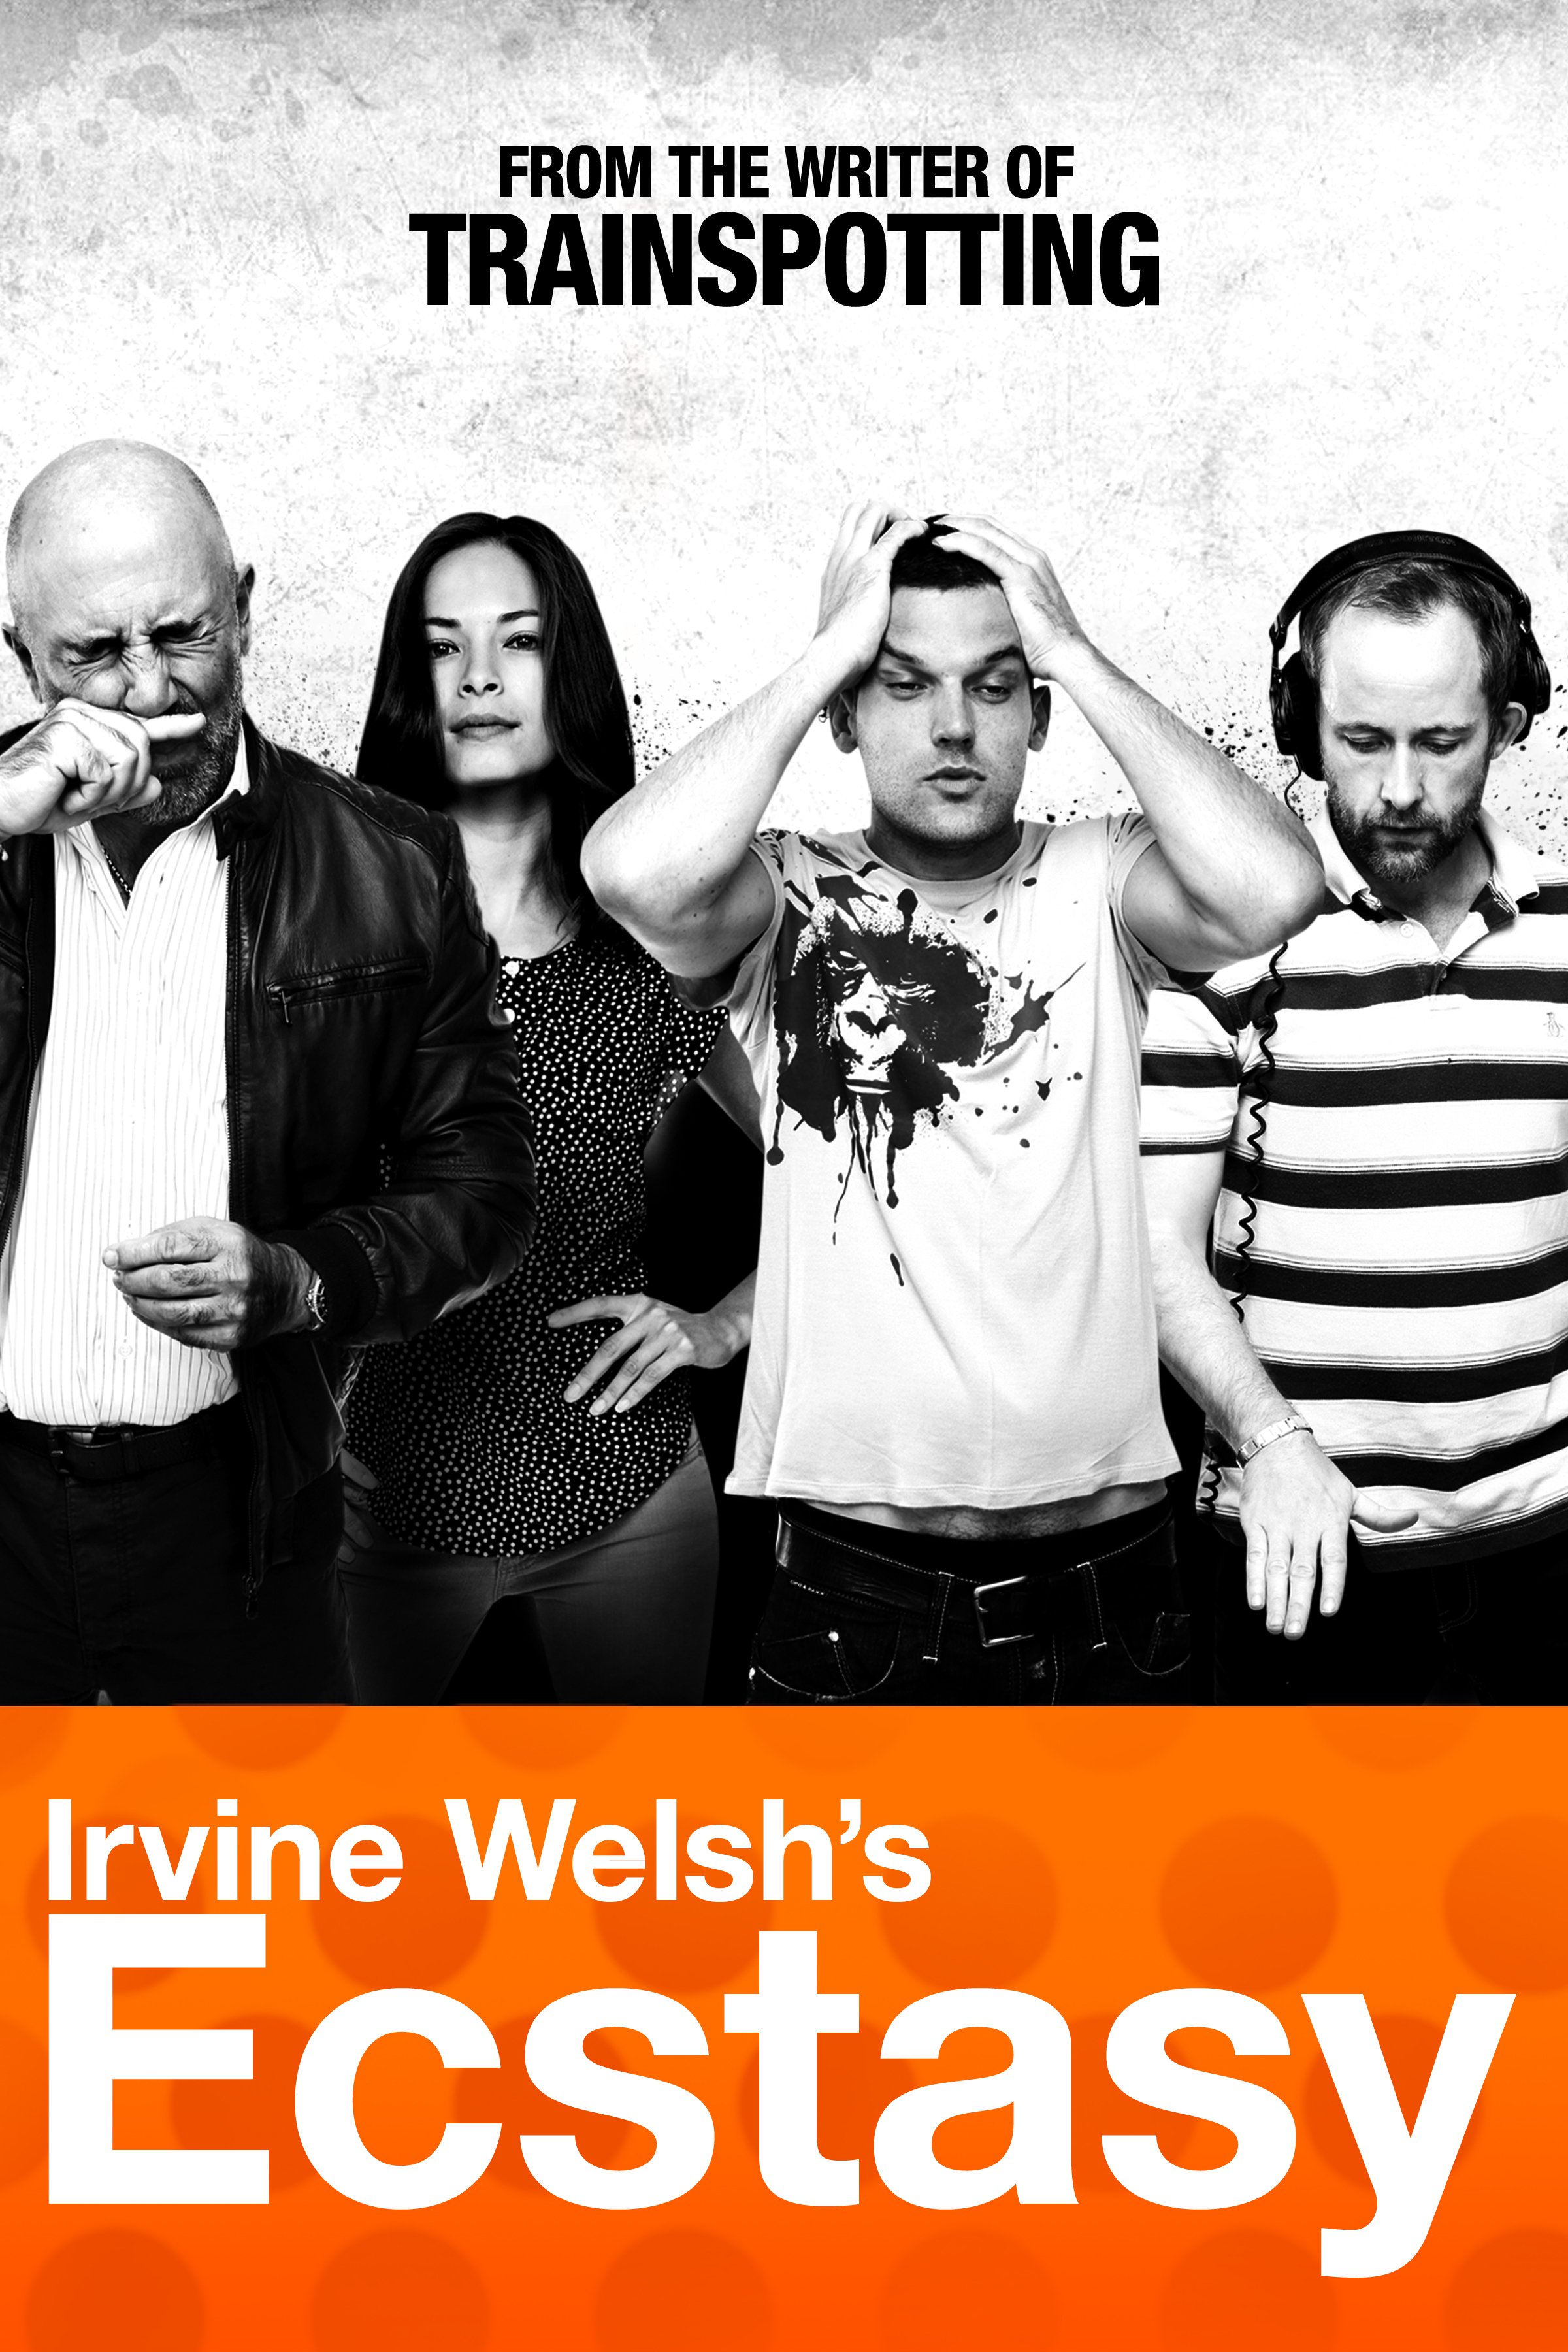 Irvine Welsh's Ecstasy, 2011 